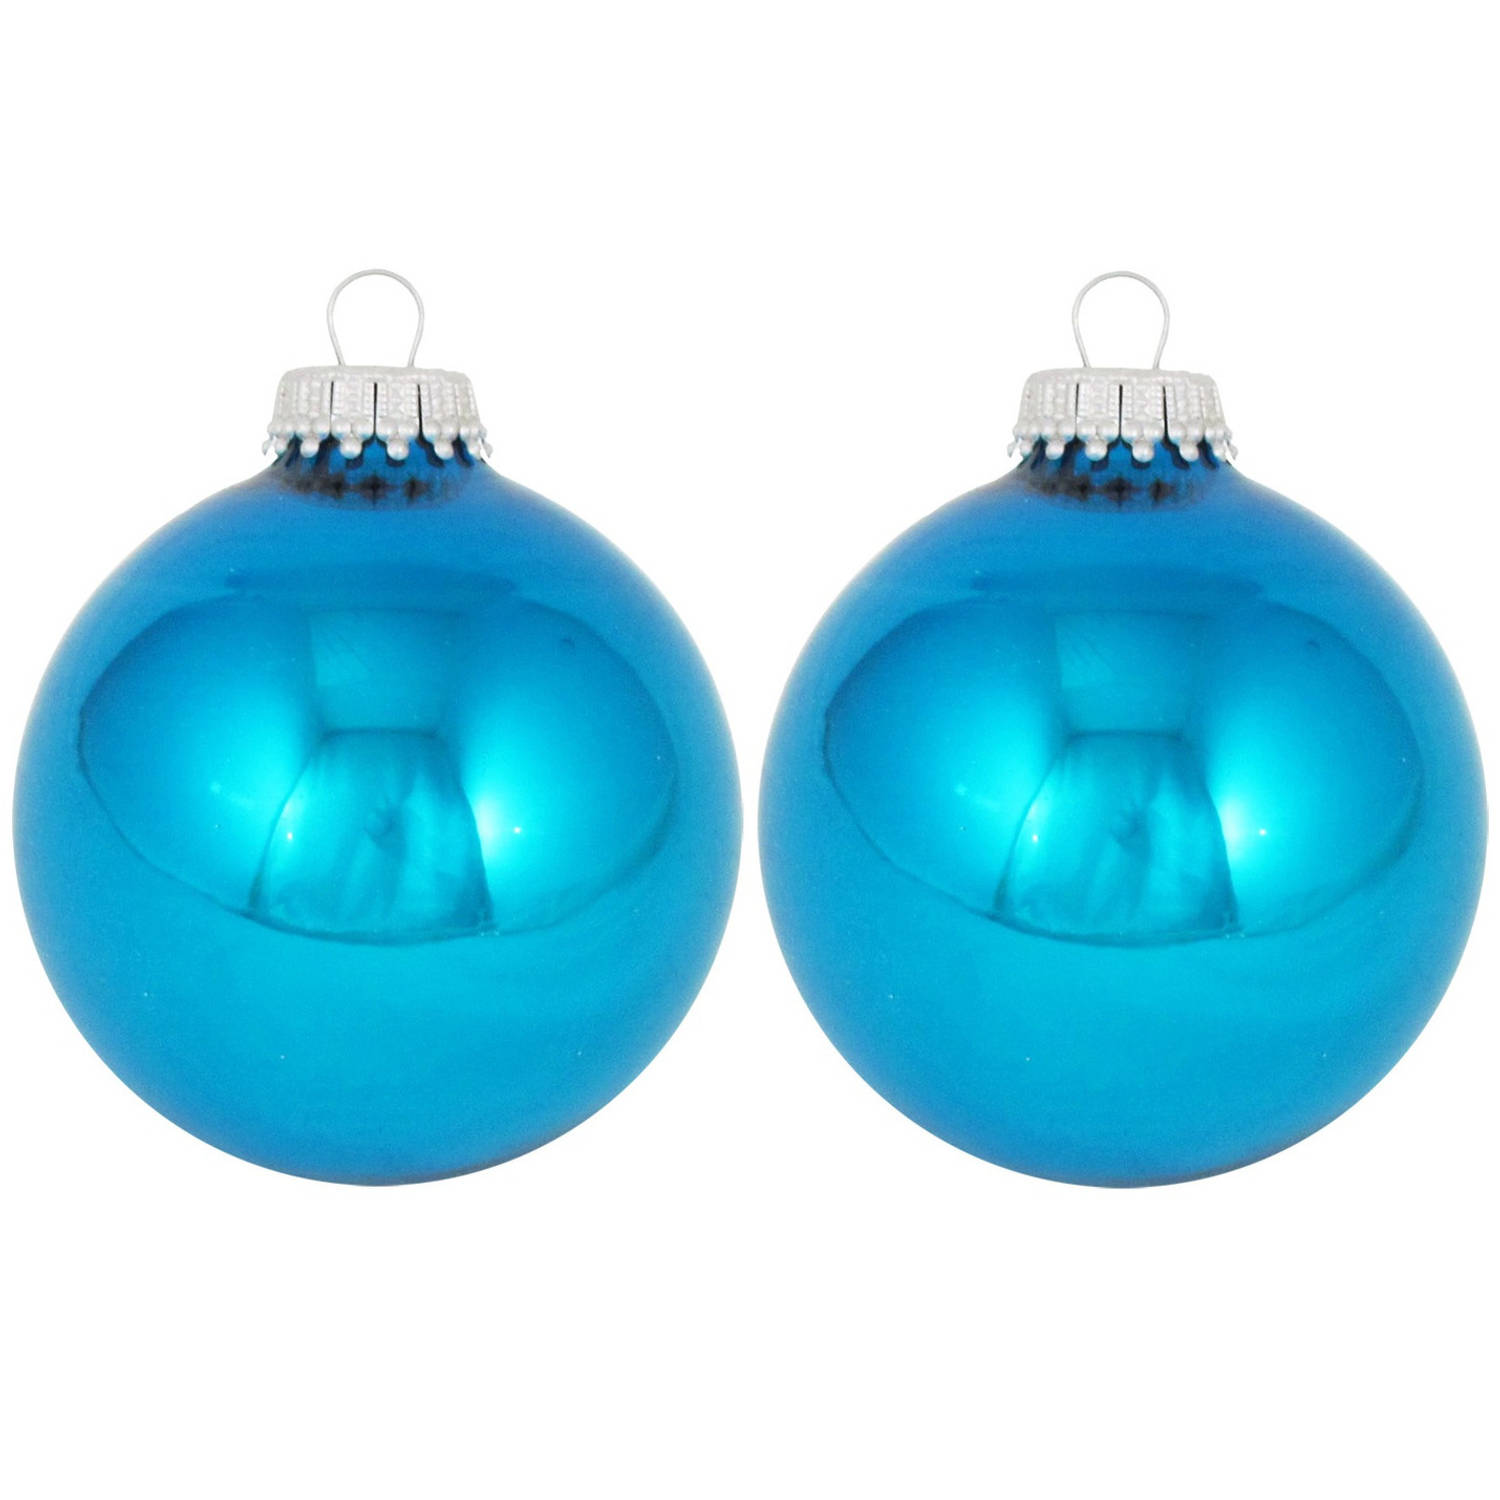 16x Hawaii Blauwe Glazen Kerstballen Glans 7 Cm Kerstboomversiering Glans Kerstversiering-kerstdecor